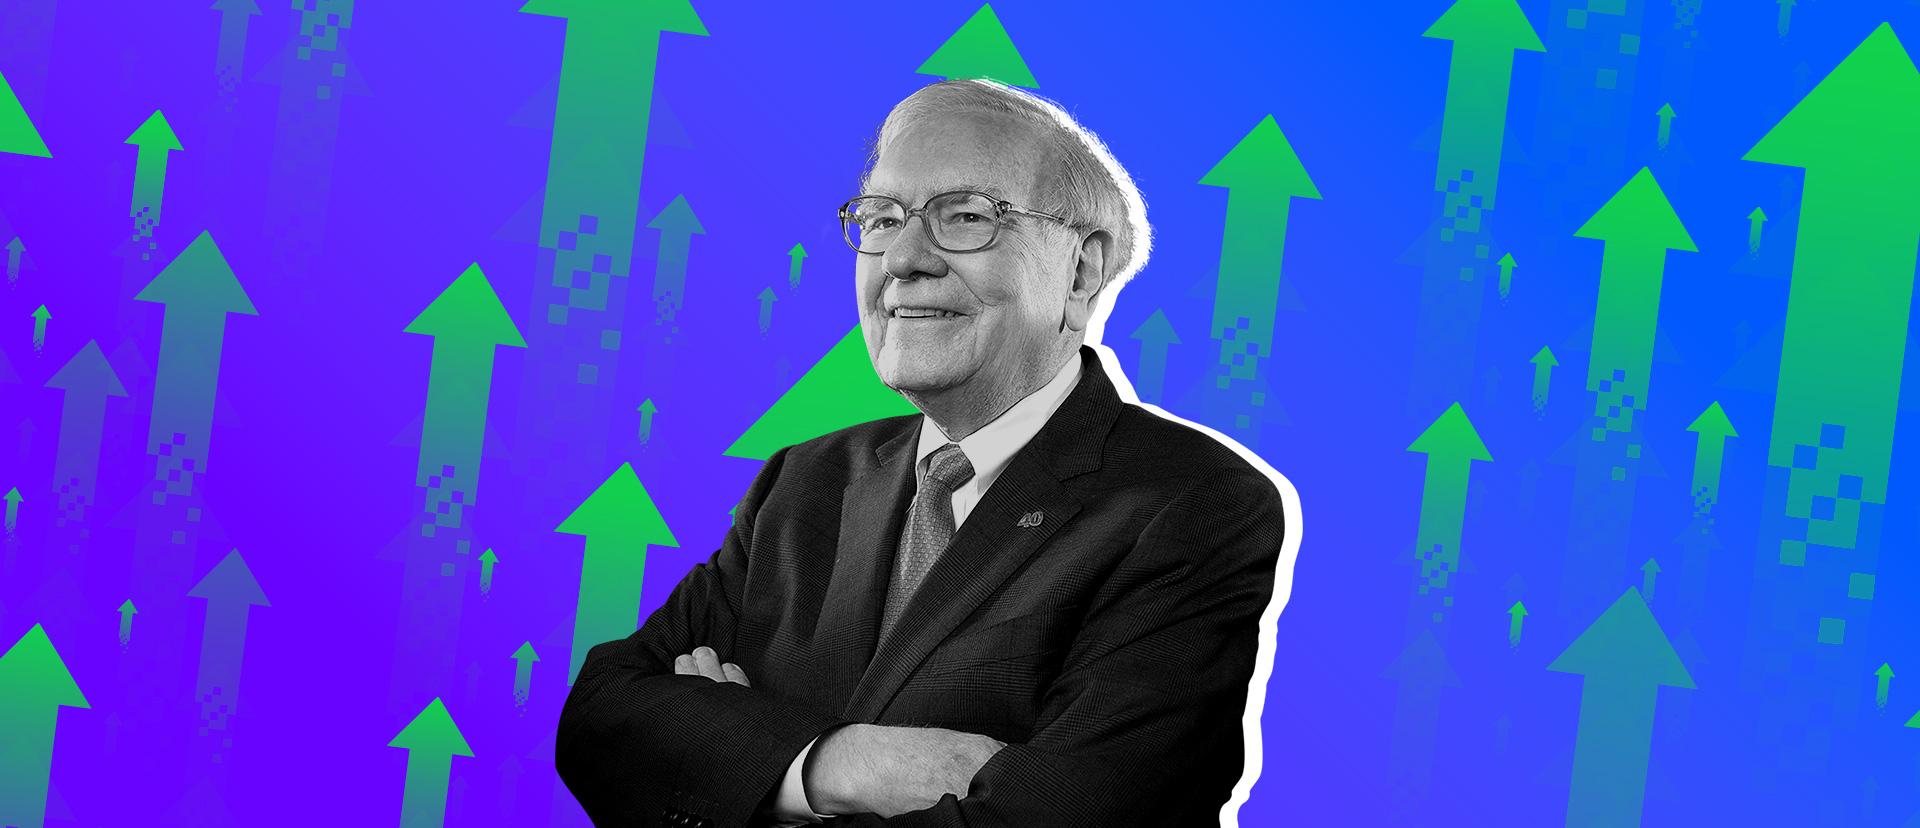 Qué empresas considera Warren Buffet dignas de atención